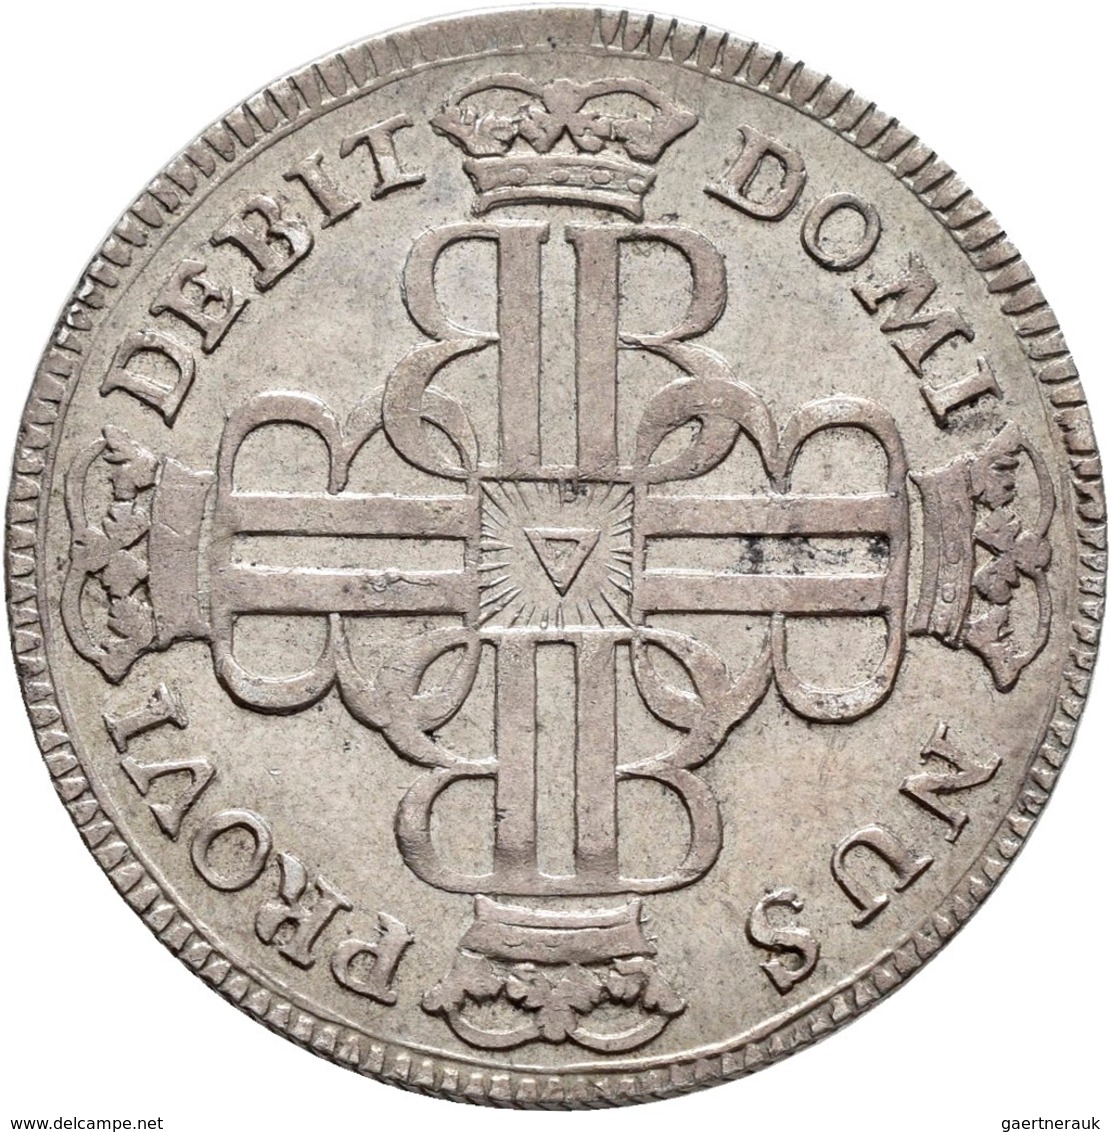 Schweiz: Lot 6 Stück; Basel 1/3 Taler 1764, Bern 1/4 Taler 1758, Helvetische Republik 10 Batzen 1799